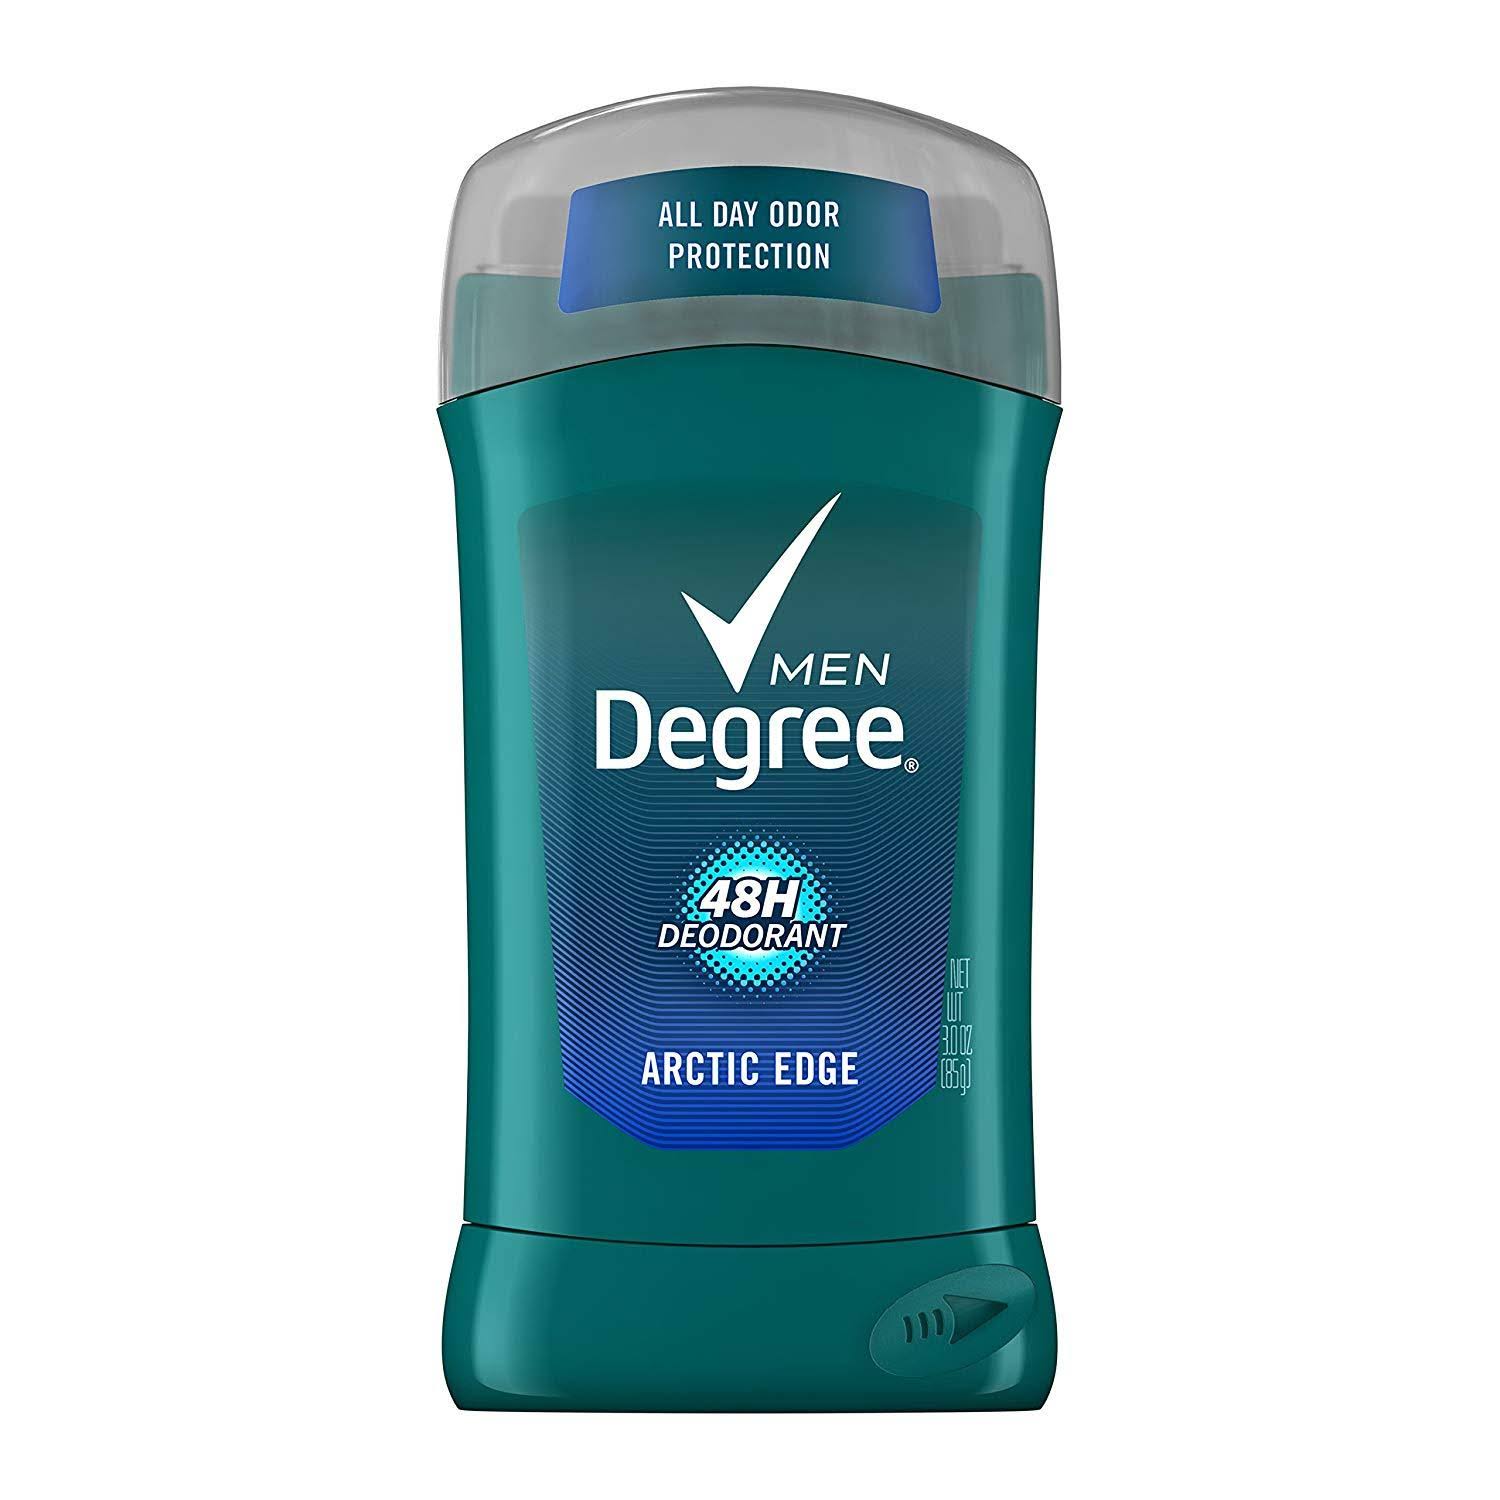 Degree Men 24H Deodorant - 3 oz, Arctic Edge